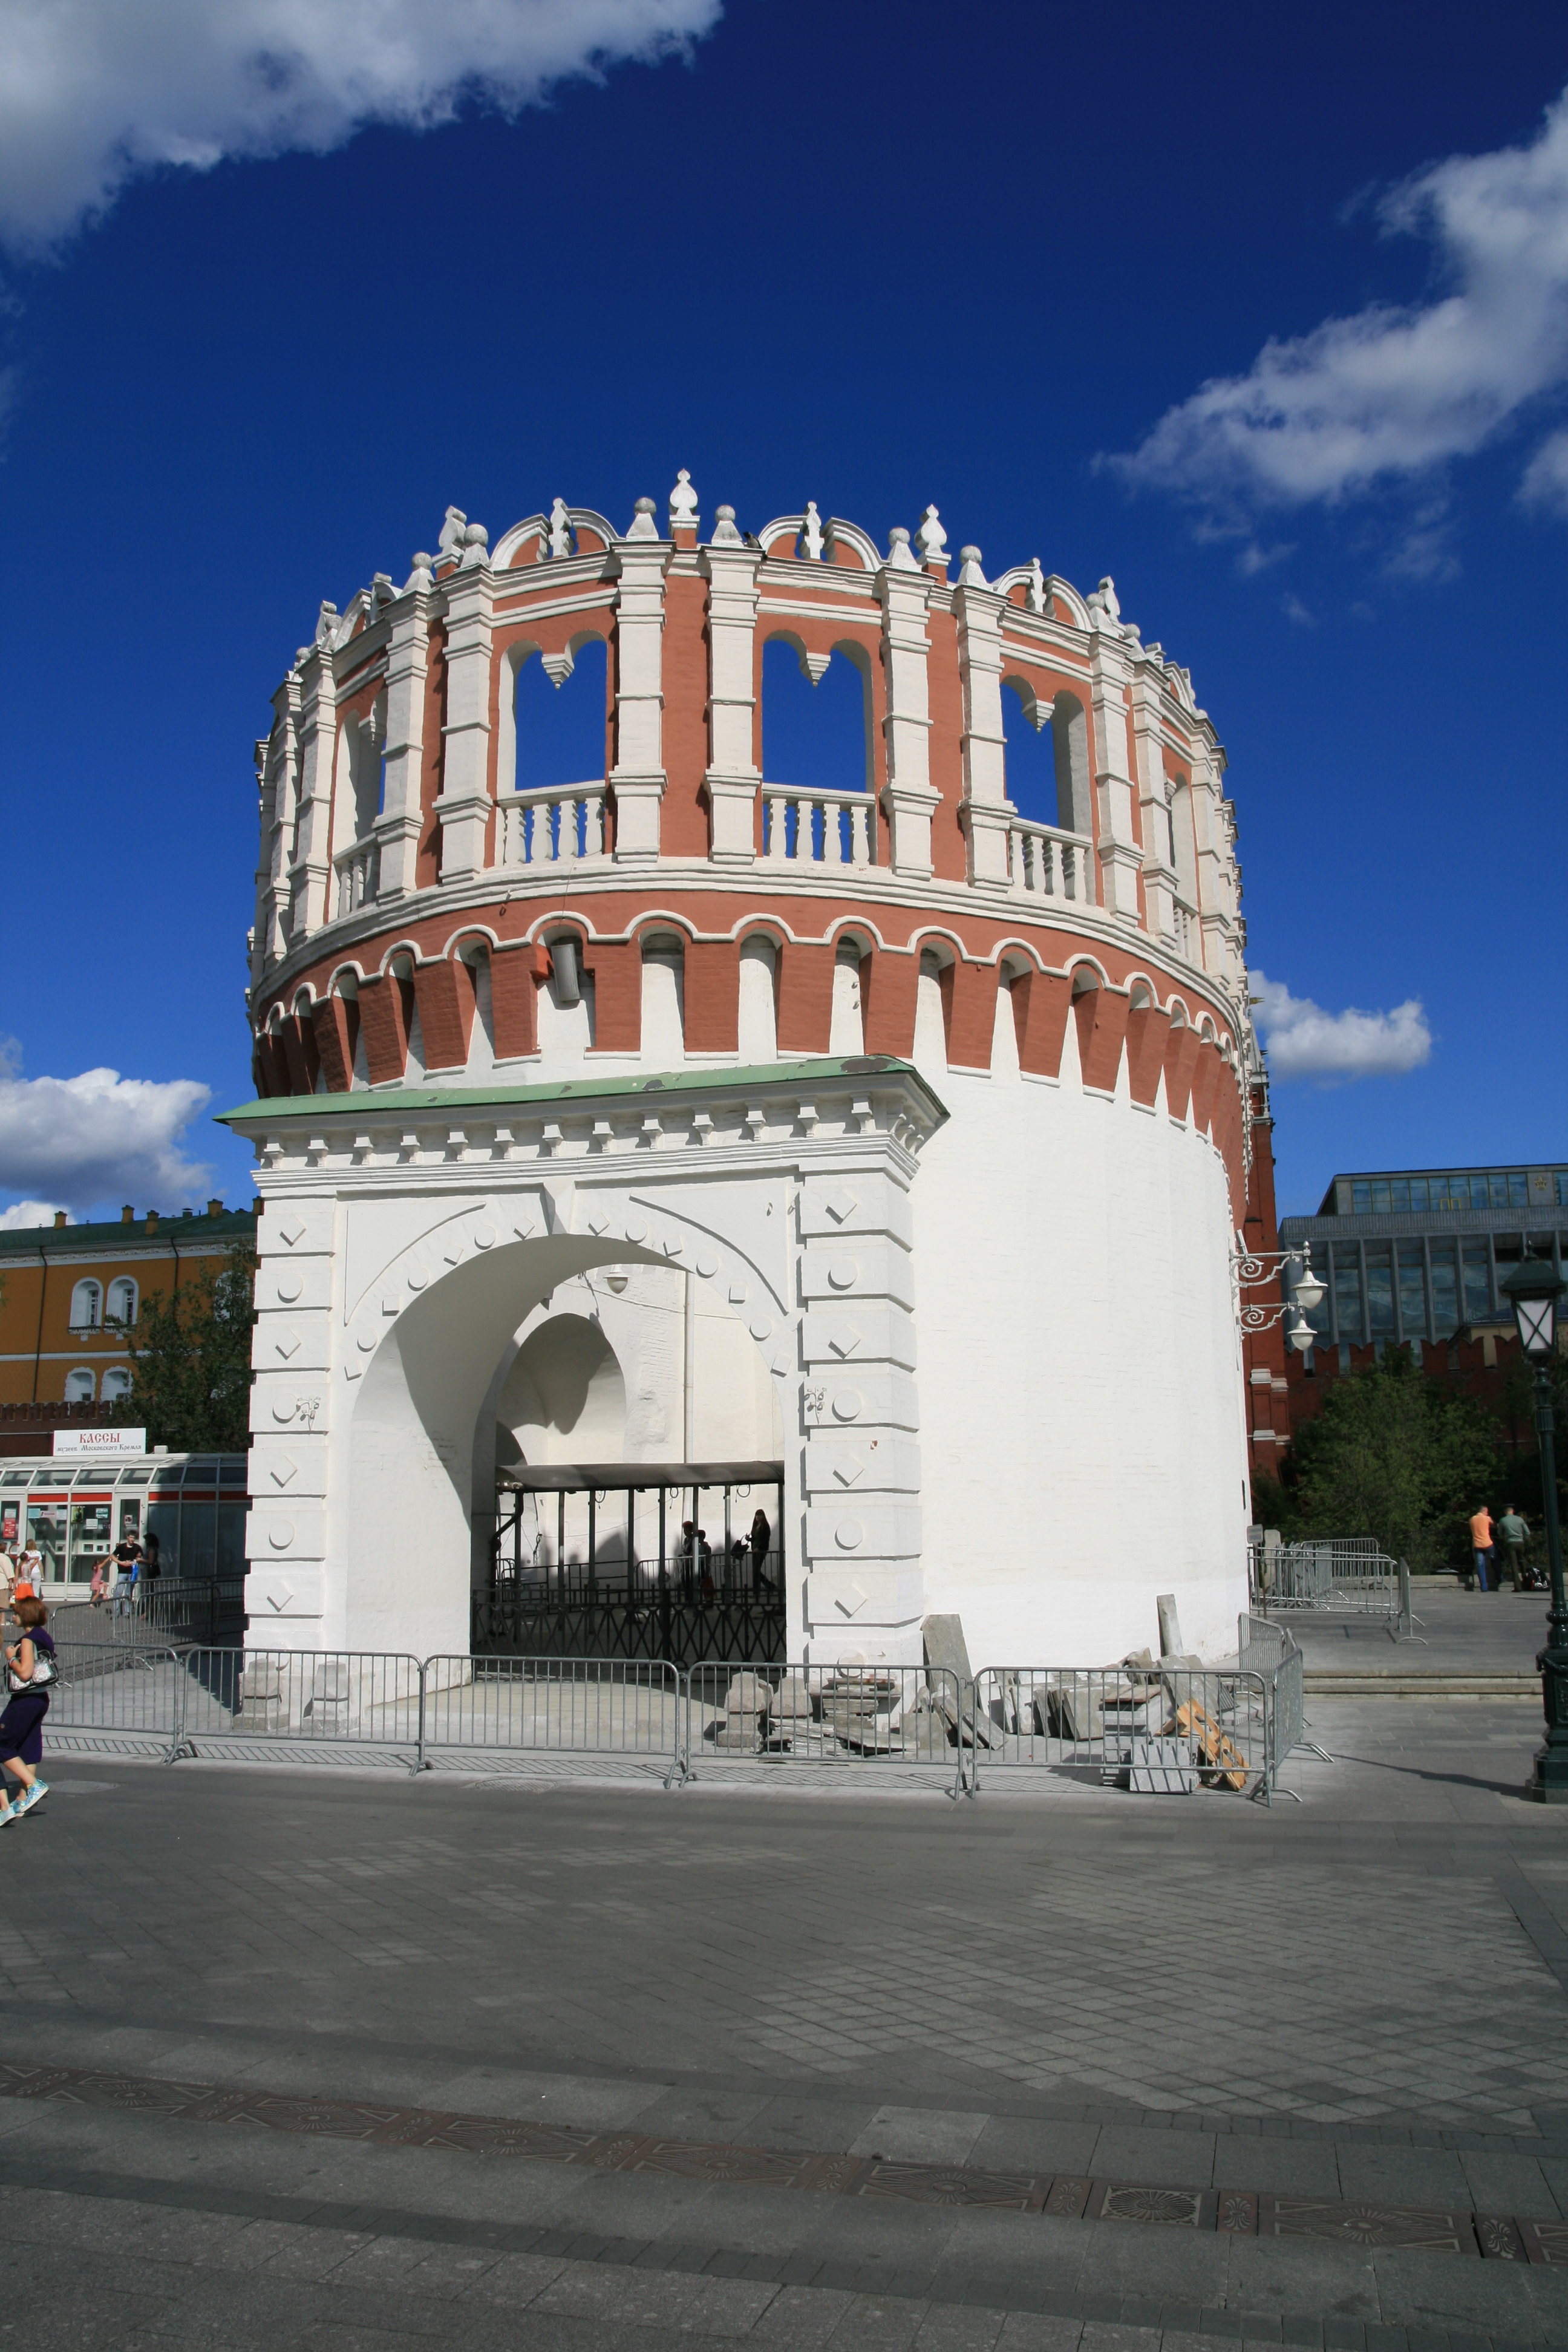 Кутафья башня на красной площади фото